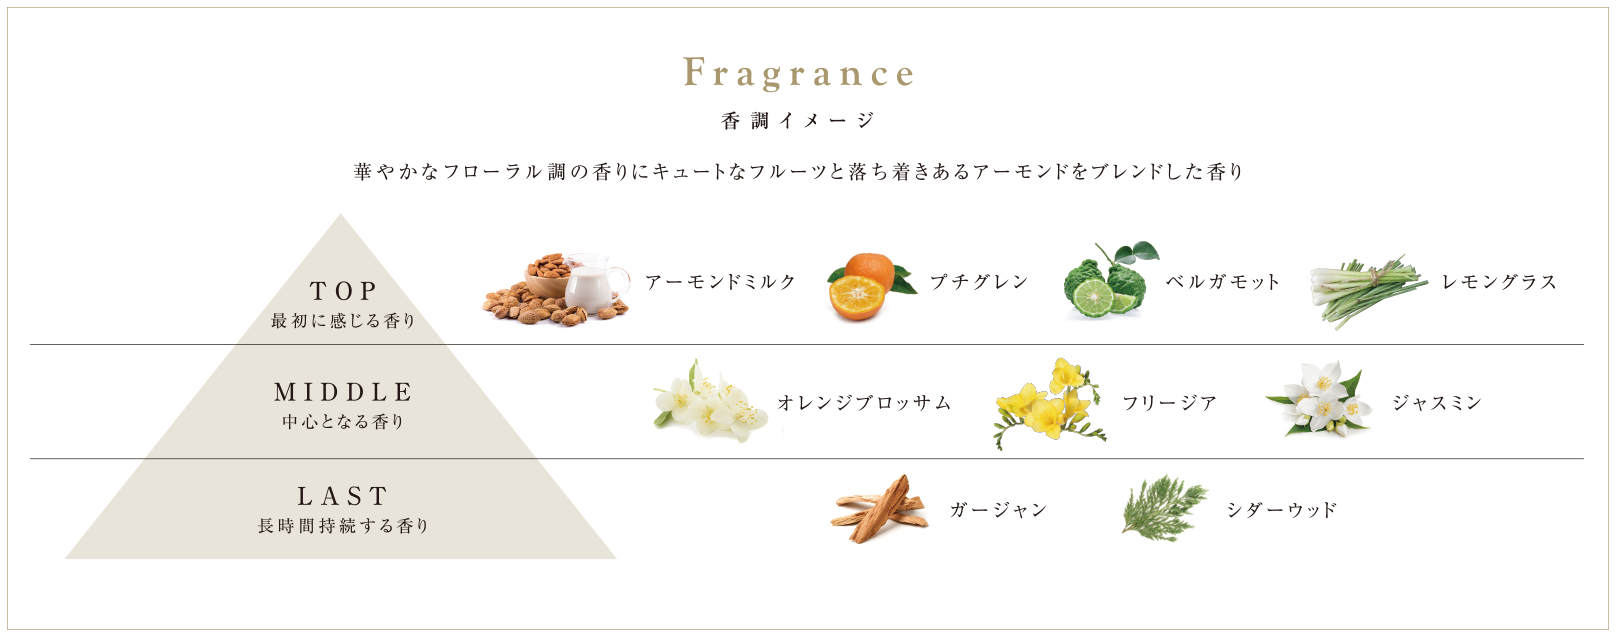 Fragrance image